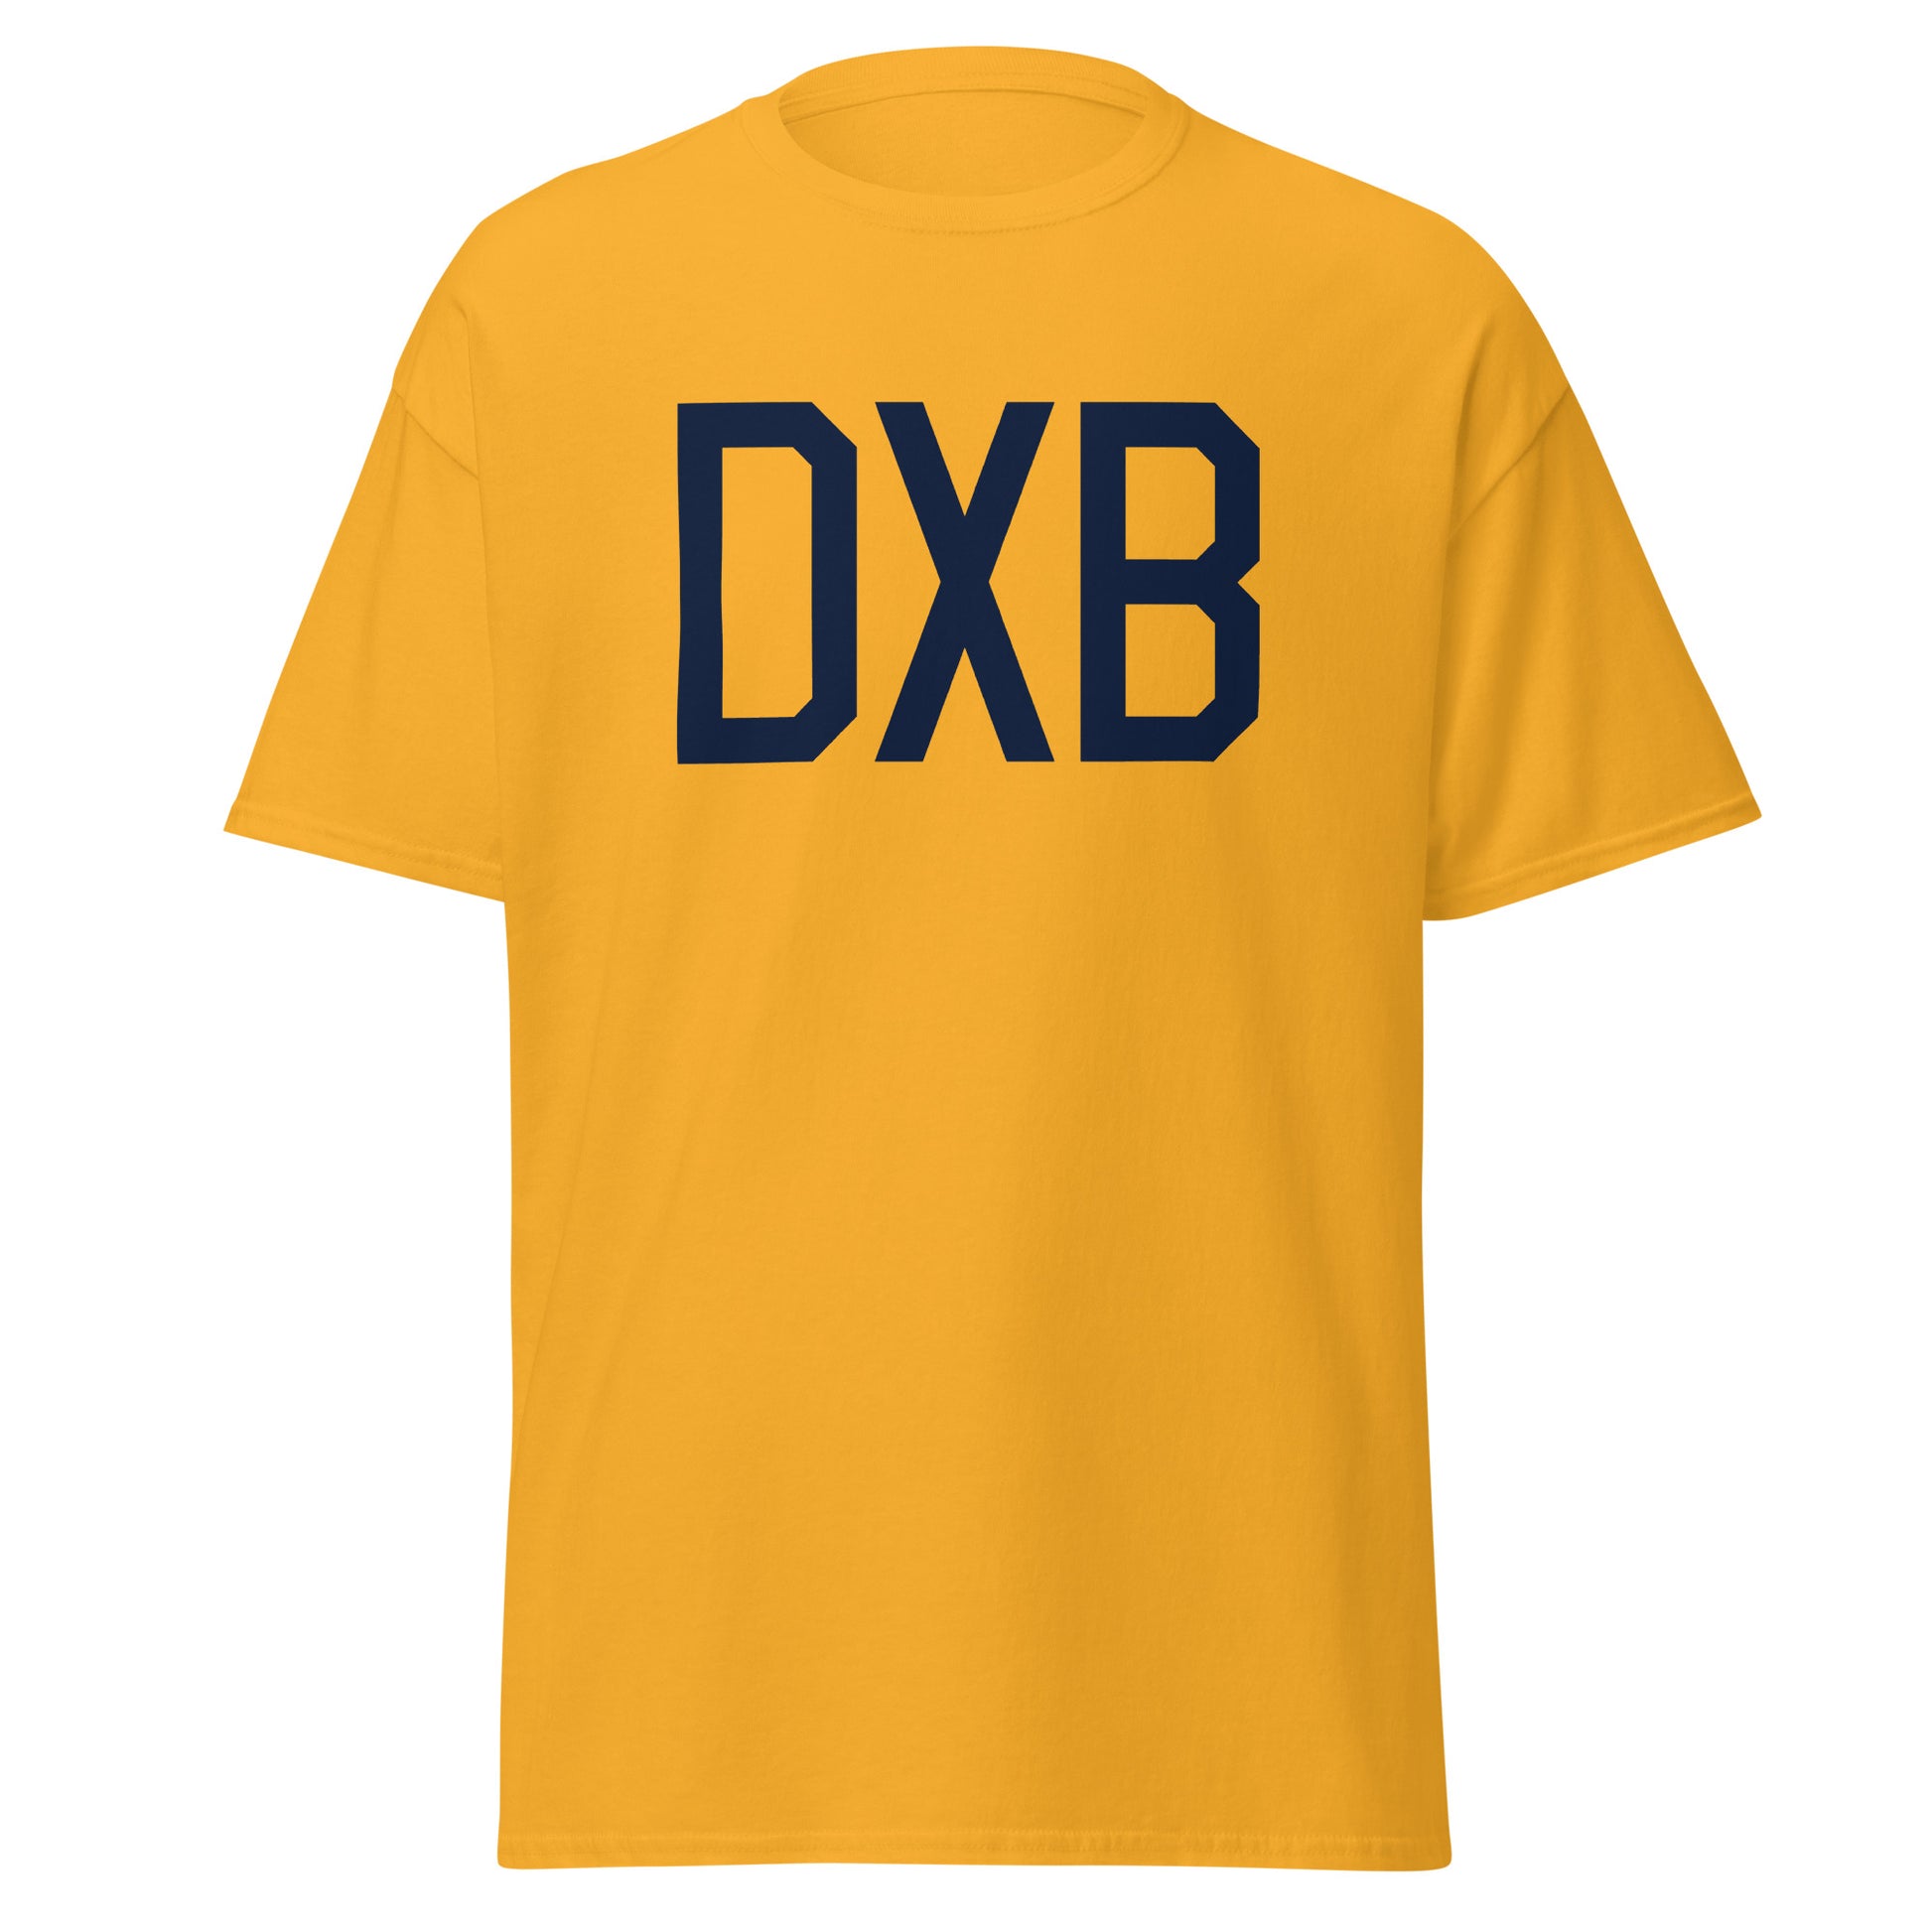 Aviation-Theme Men's T-Shirt - Navy Blue Graphic • DXB Dubai • YHM Designs - Image 05